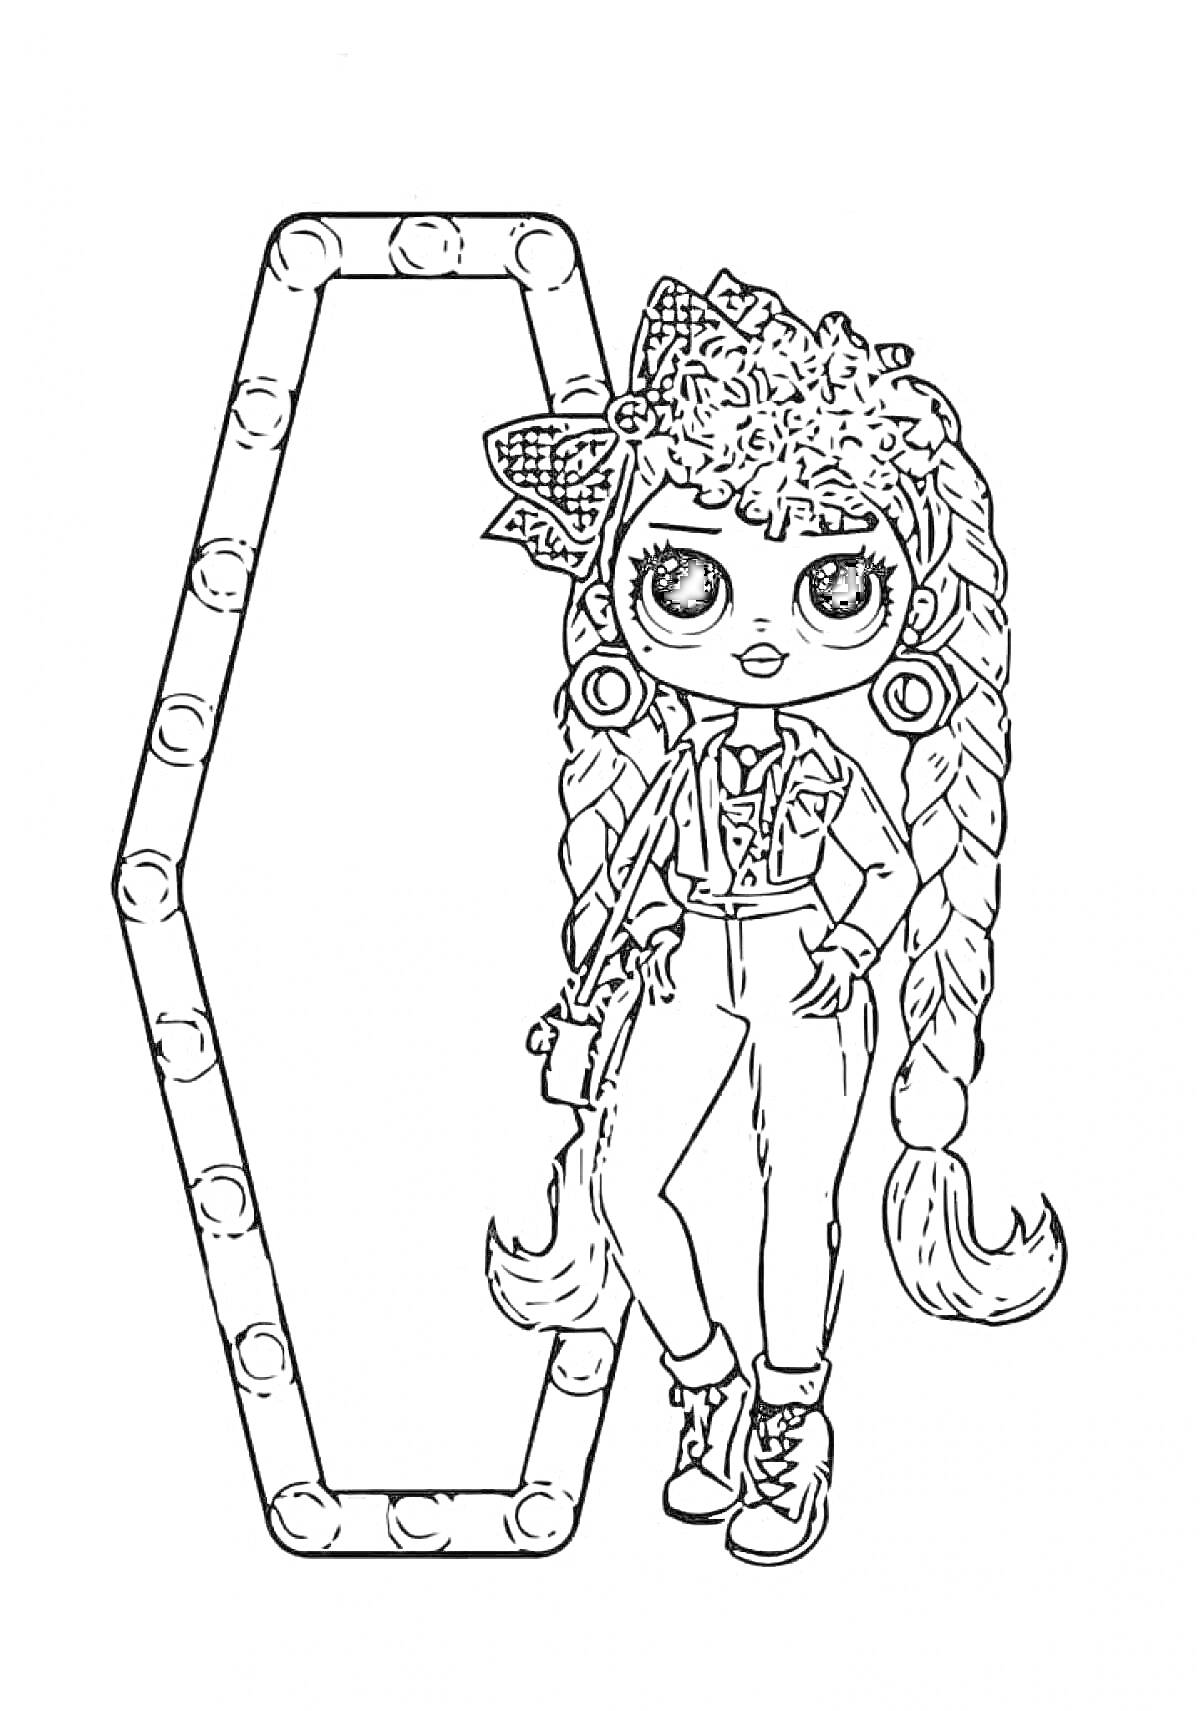 Раскраска кукла LOL OMG с двухслойными косами и большим бантом на голове, позирующая перед зеркалом с лампочками, одета в джинсовый комбинезон, блузку с длинным рукавом и ботинки